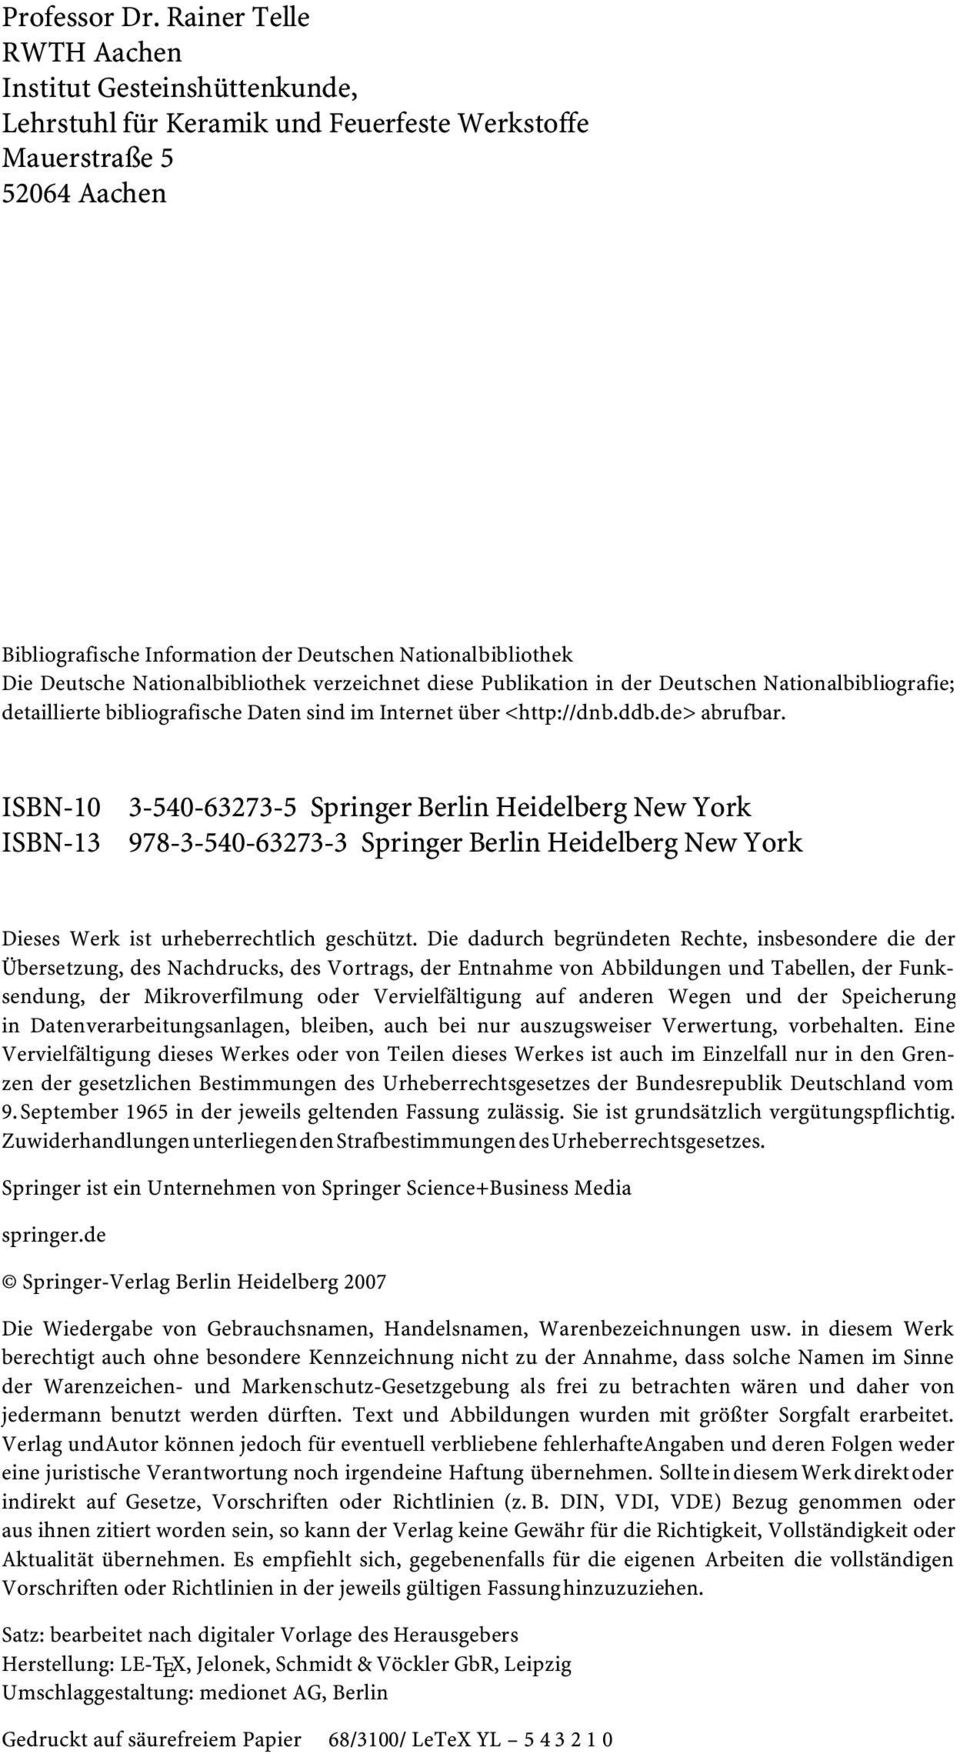 Deutsche Nationalbibliothek verzeichnet diese Publikation in der Deutschen Nationalbibliografie; detaillierte bibliografische Daten sind im Internet über <http://dnb.ddb.de> abrufbar.